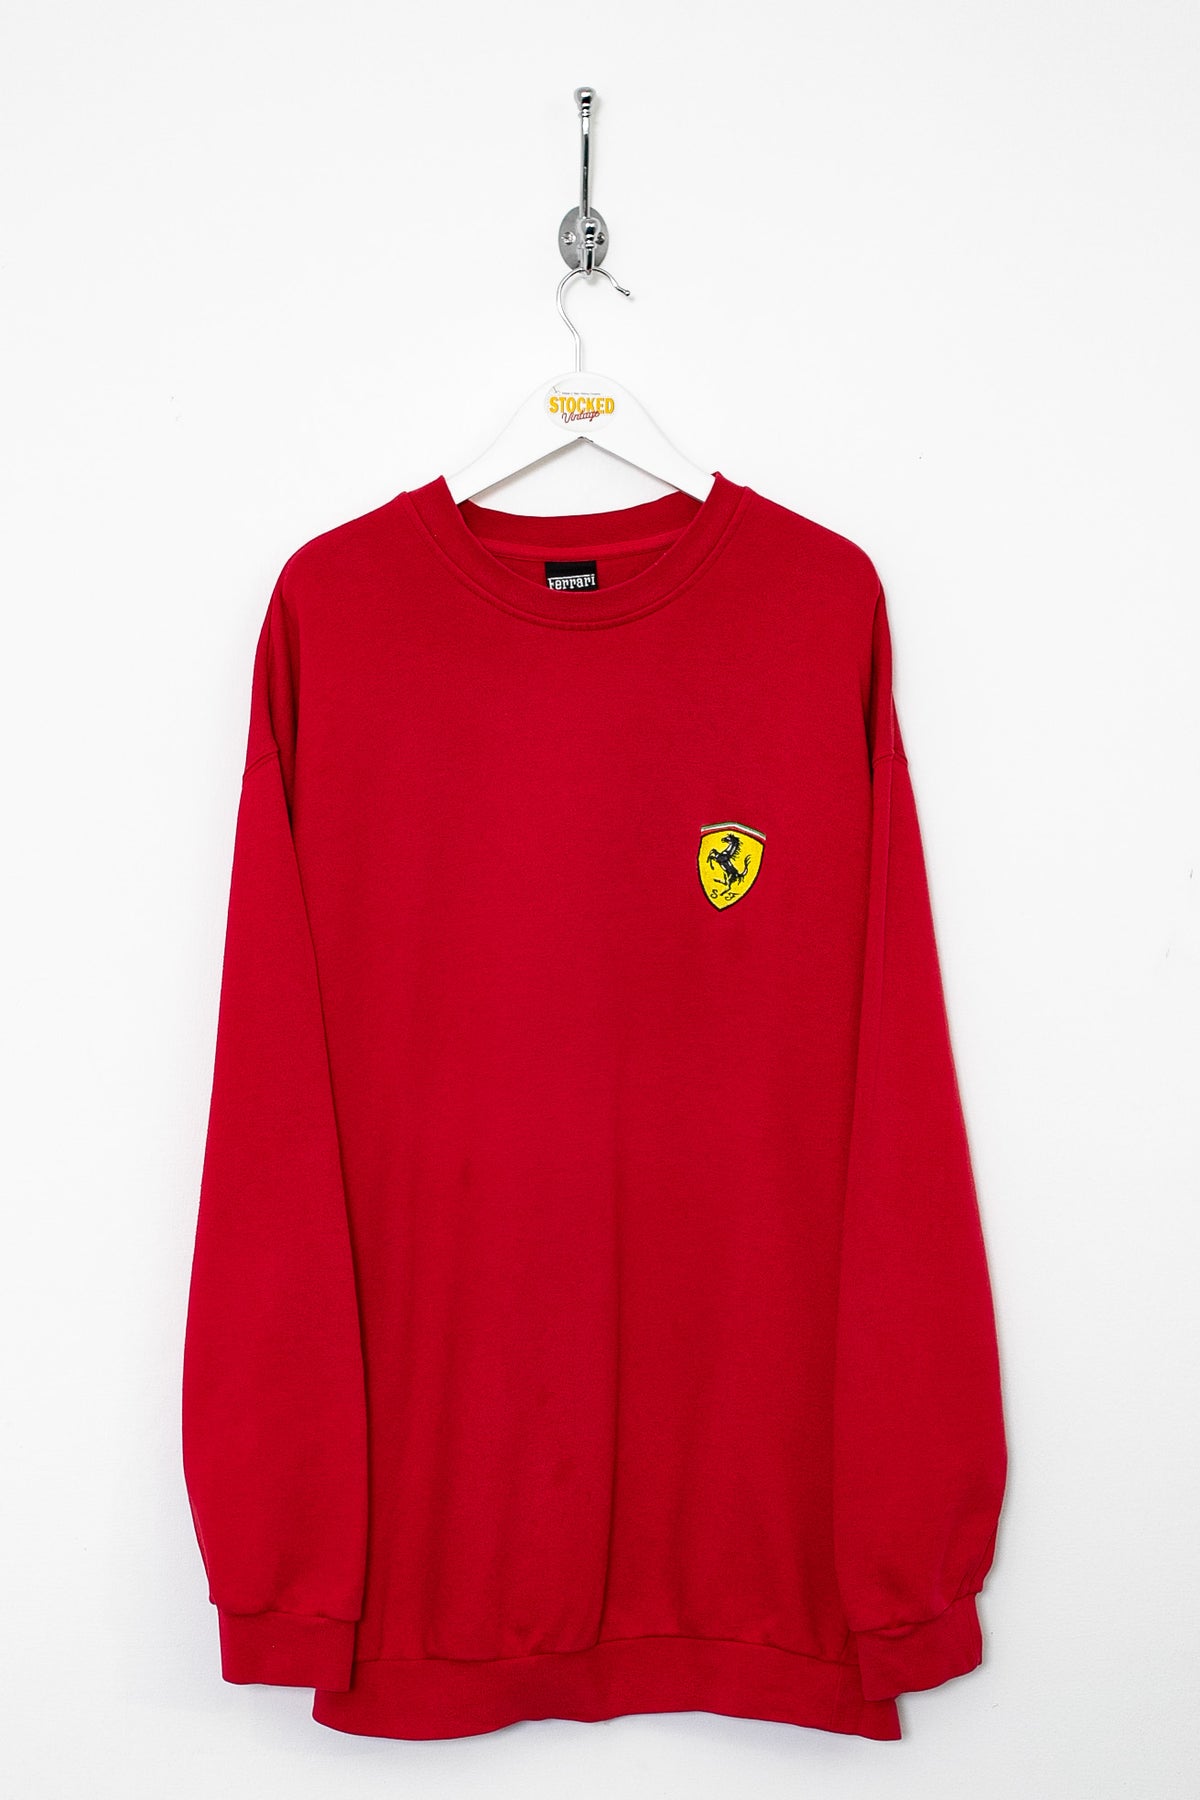 1998 Ferrari Sweatshirt (XL)